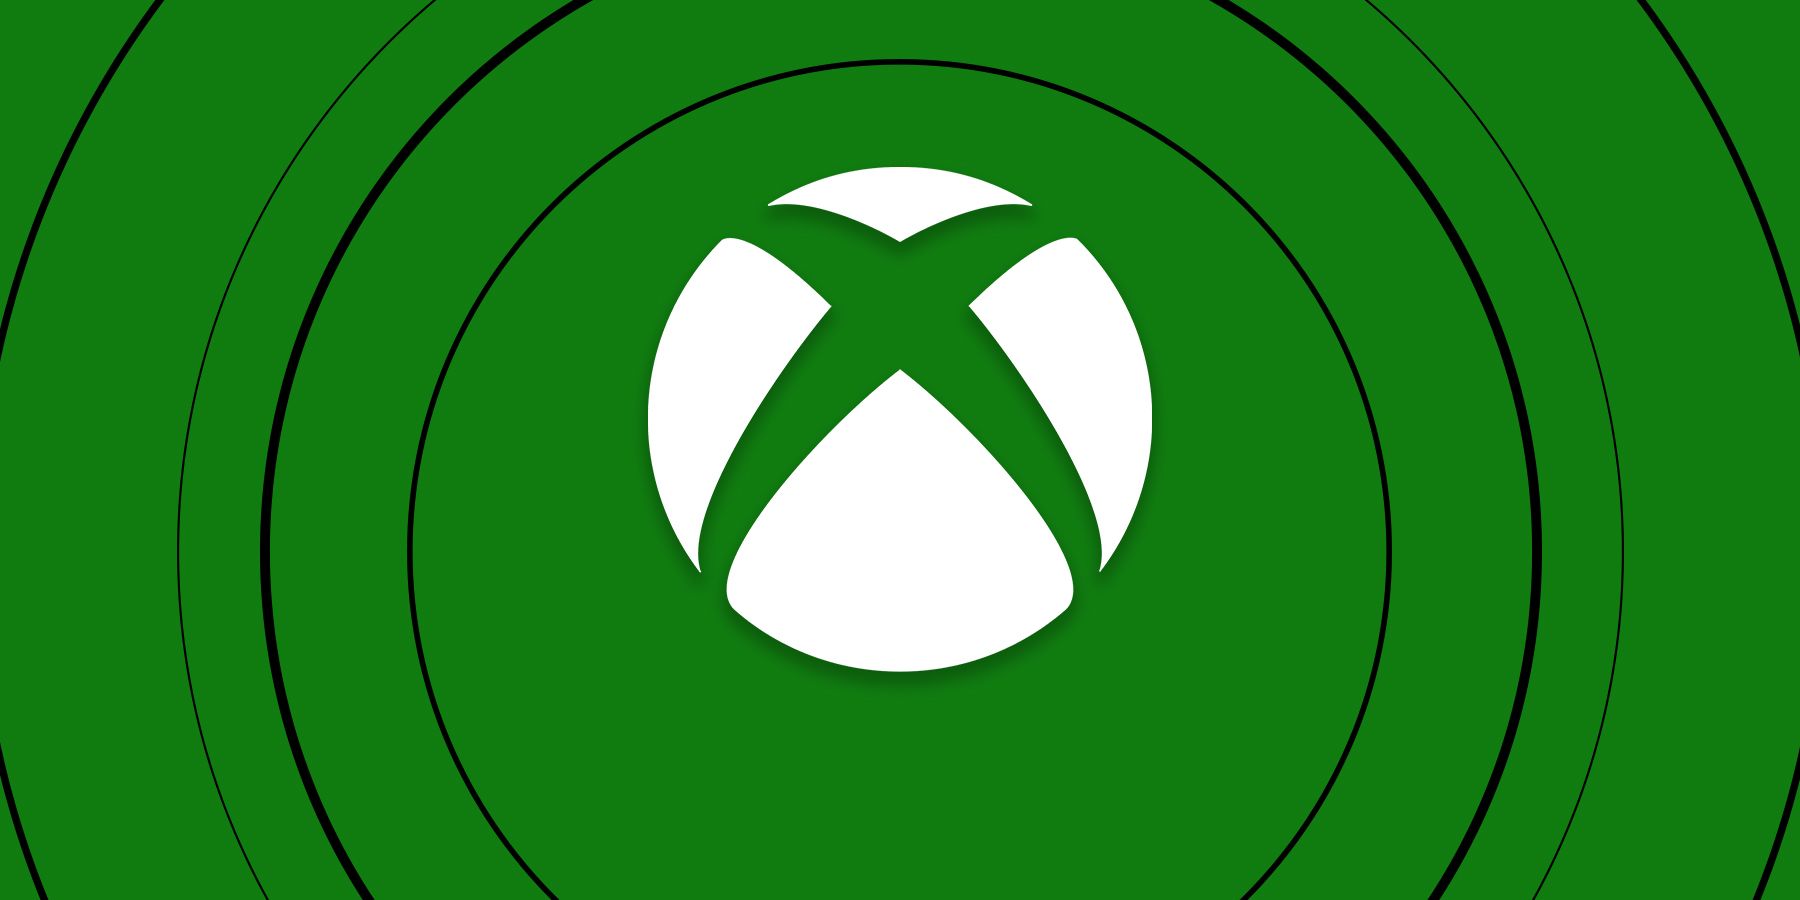 logotipo de xbox sobre fondo verde anillos negros